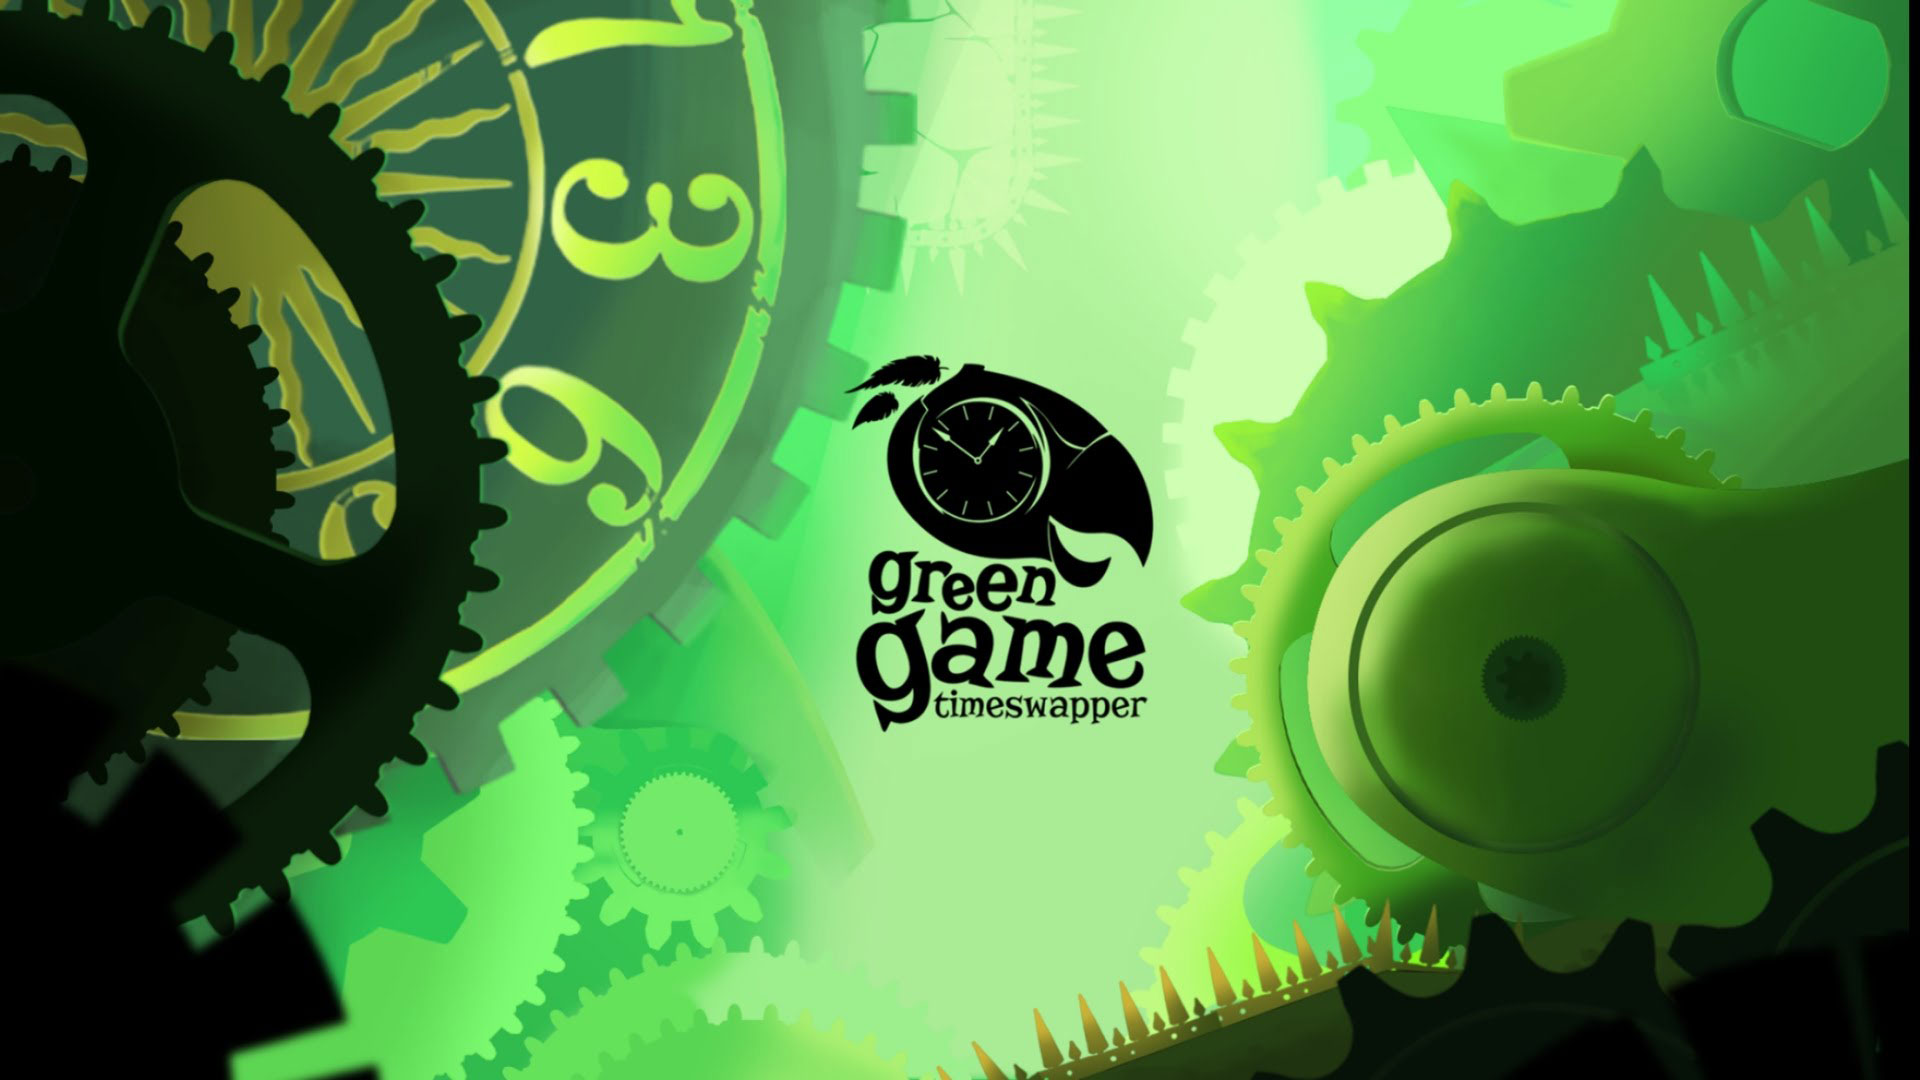 دانلود بازی Green game: Time swapper v1.0.0 براي آيفون ، آيپد و آيپاد لمسی